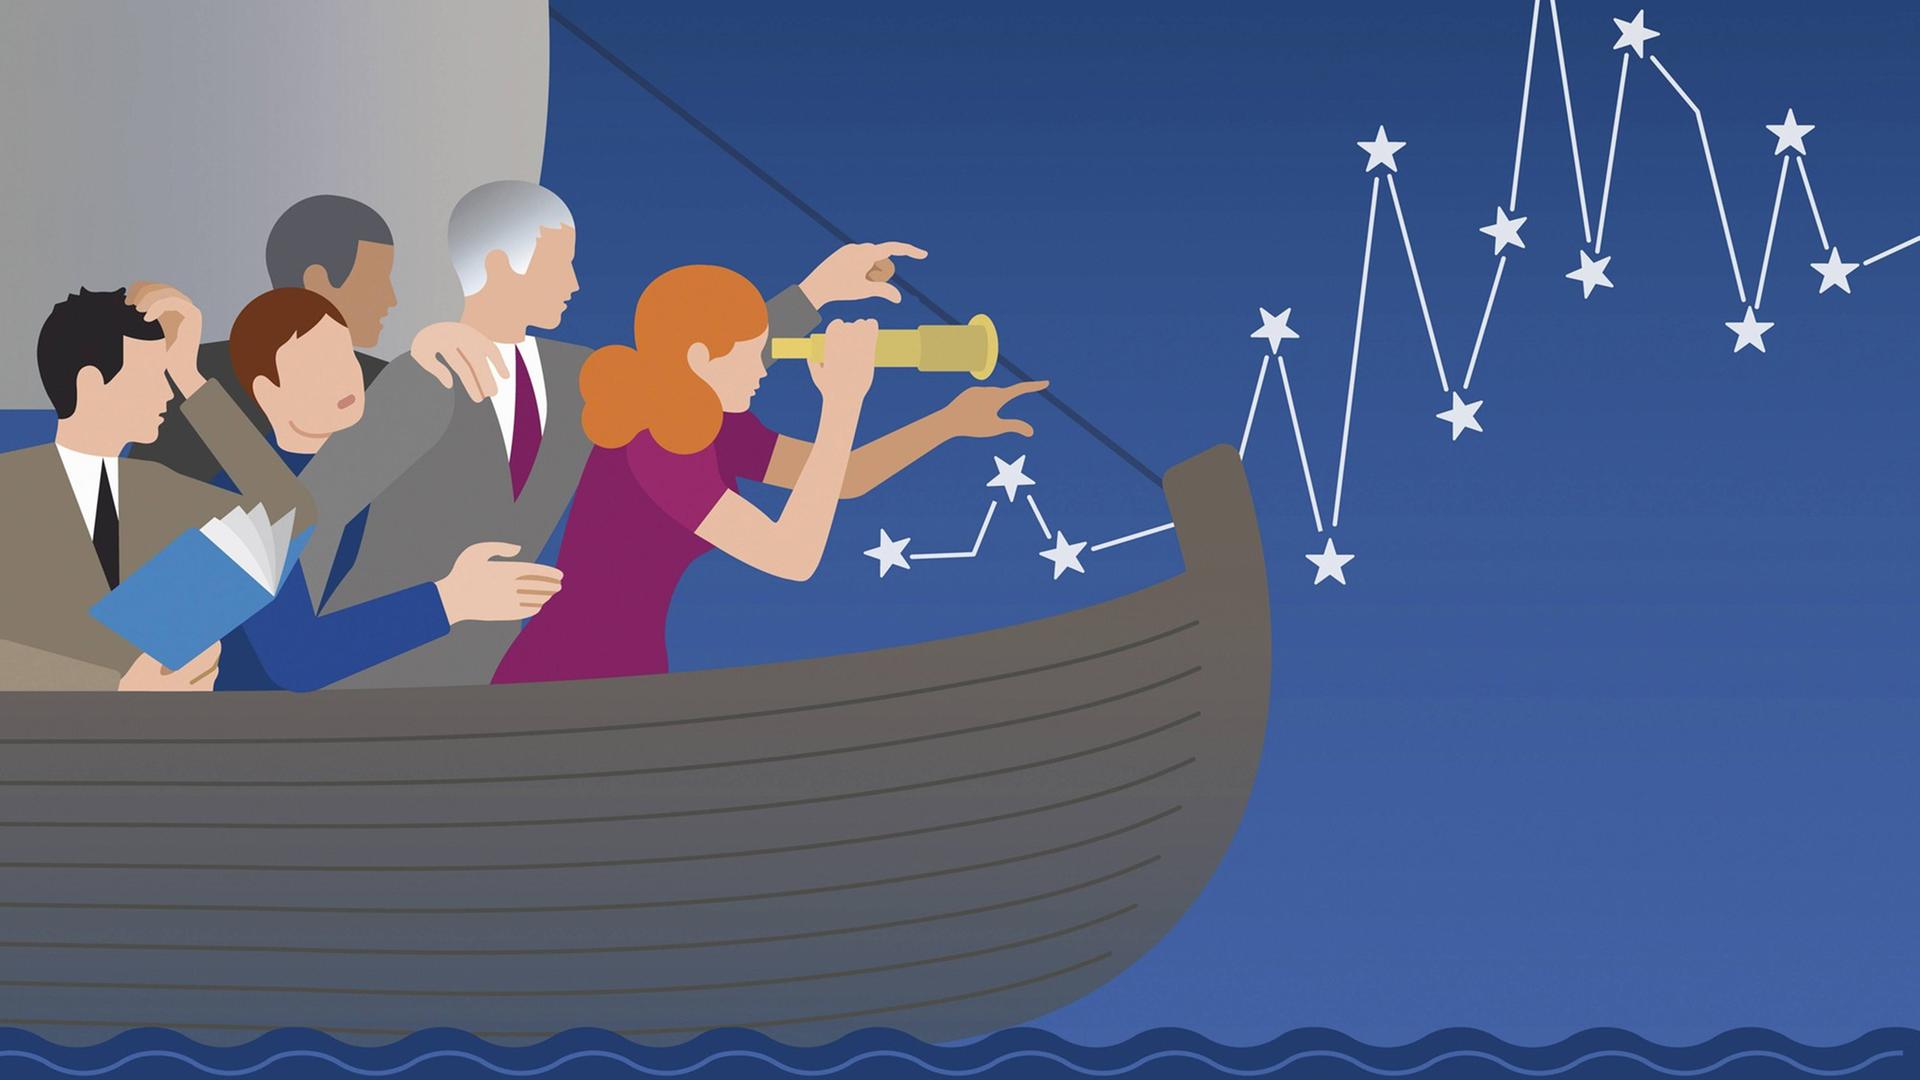 Eine Illustration zeigt Geschäftsleute auf einem Boot im Meer, die versuchen, sich zu orientieren.